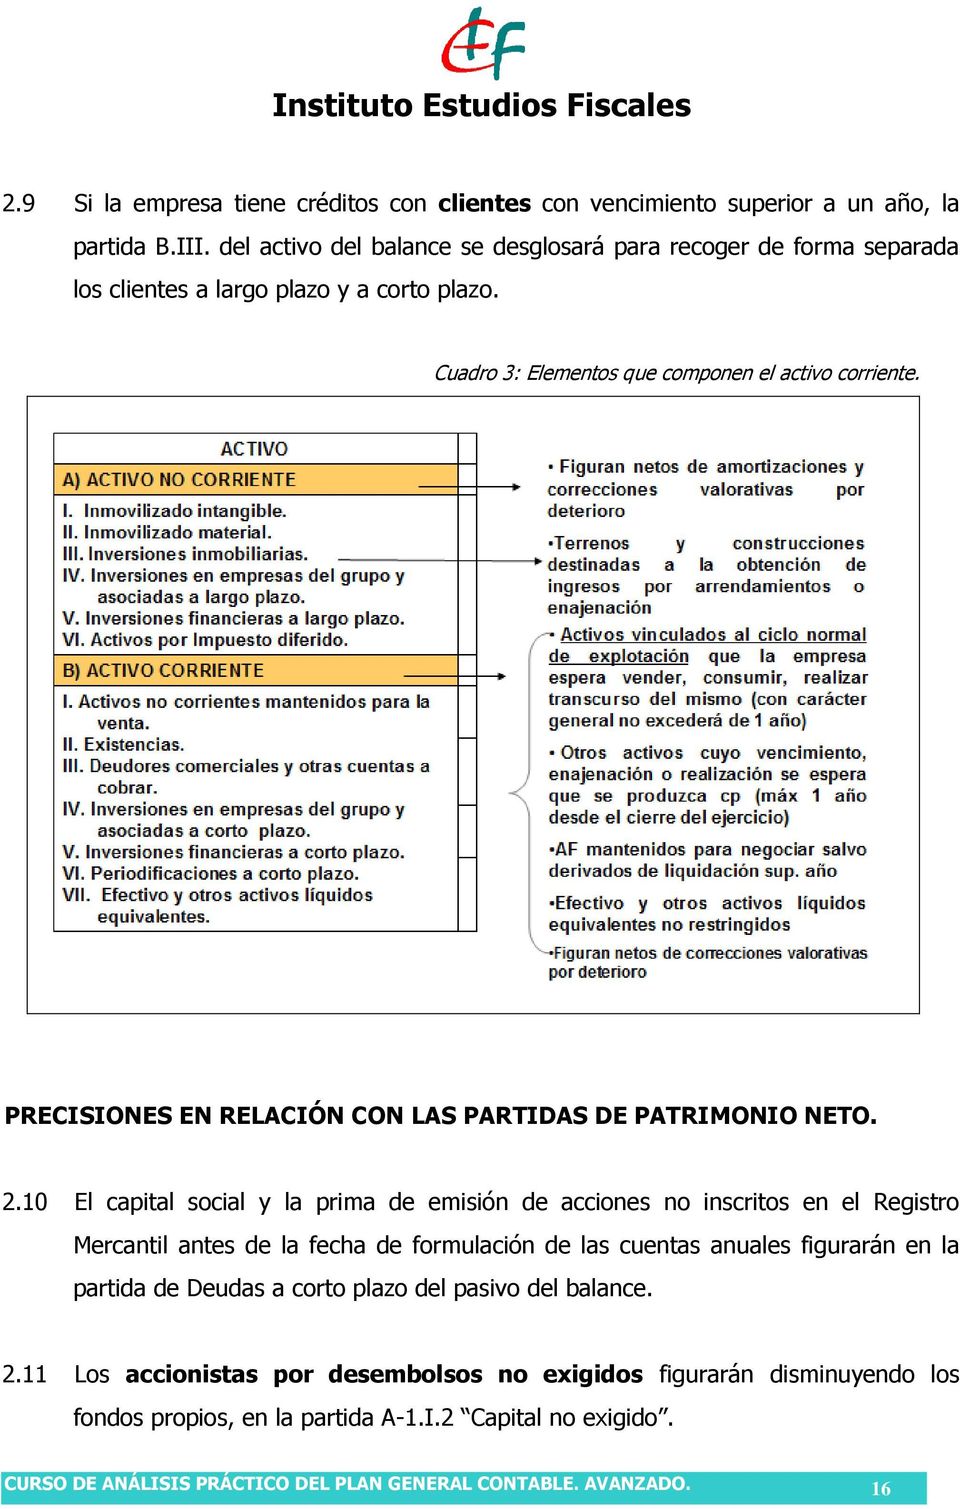 PRECISIONES EN RELACIÓN CON LAS PARTIDAS DE PATRIMONIO NETO. 2.